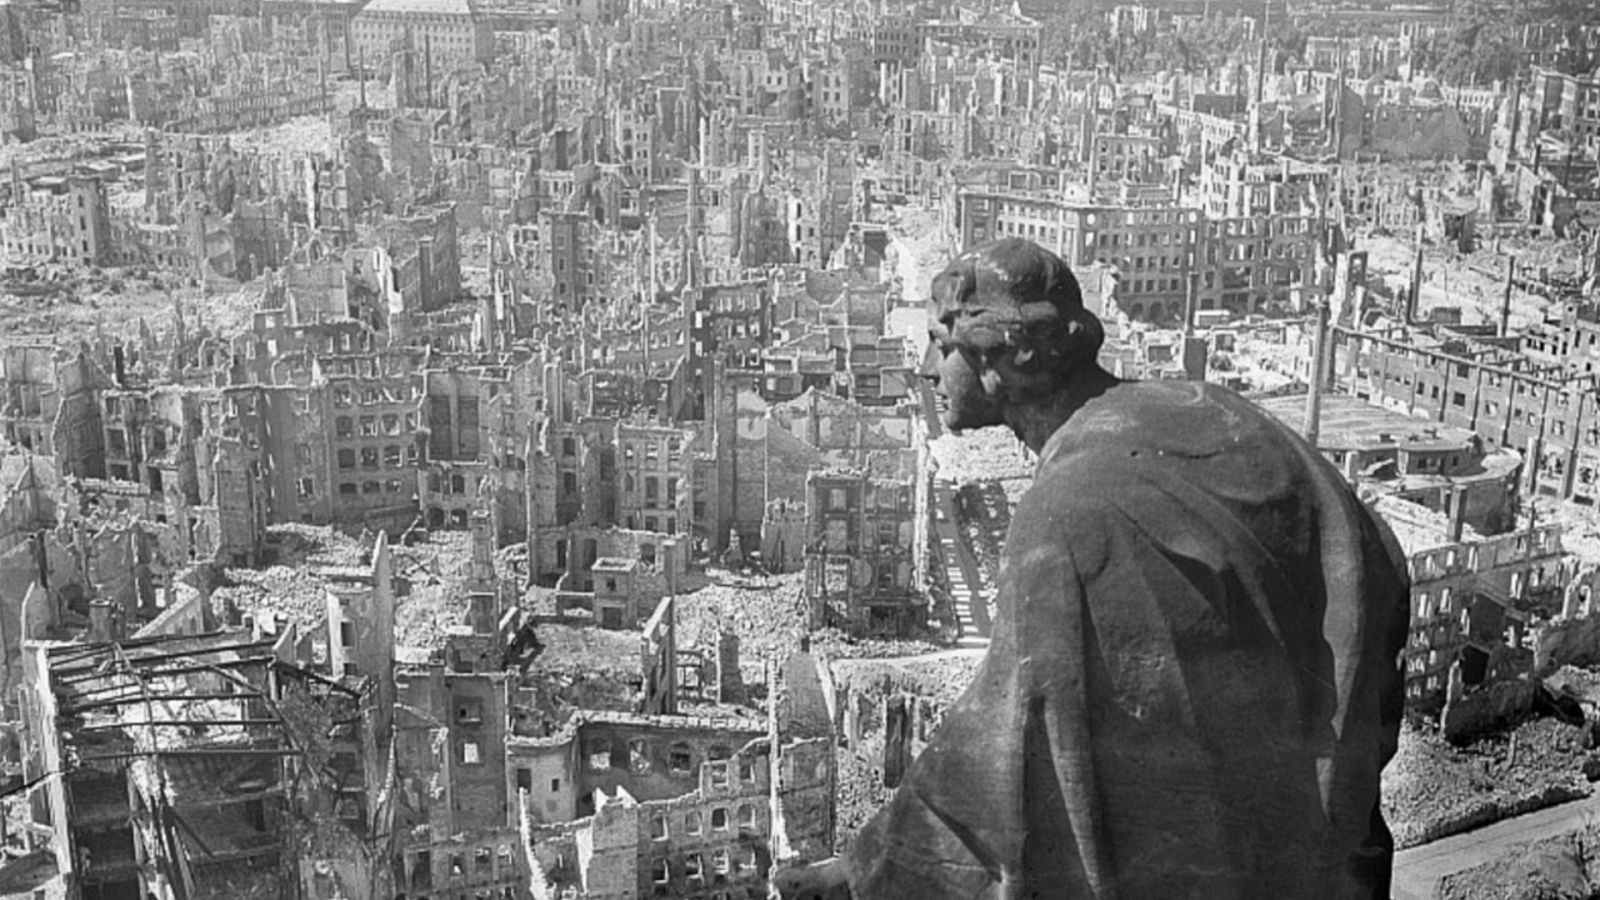 La ciudad de Dresde, arrasada por la RAF, en una imágen del célebre fotógrafo alemán Richard Peter